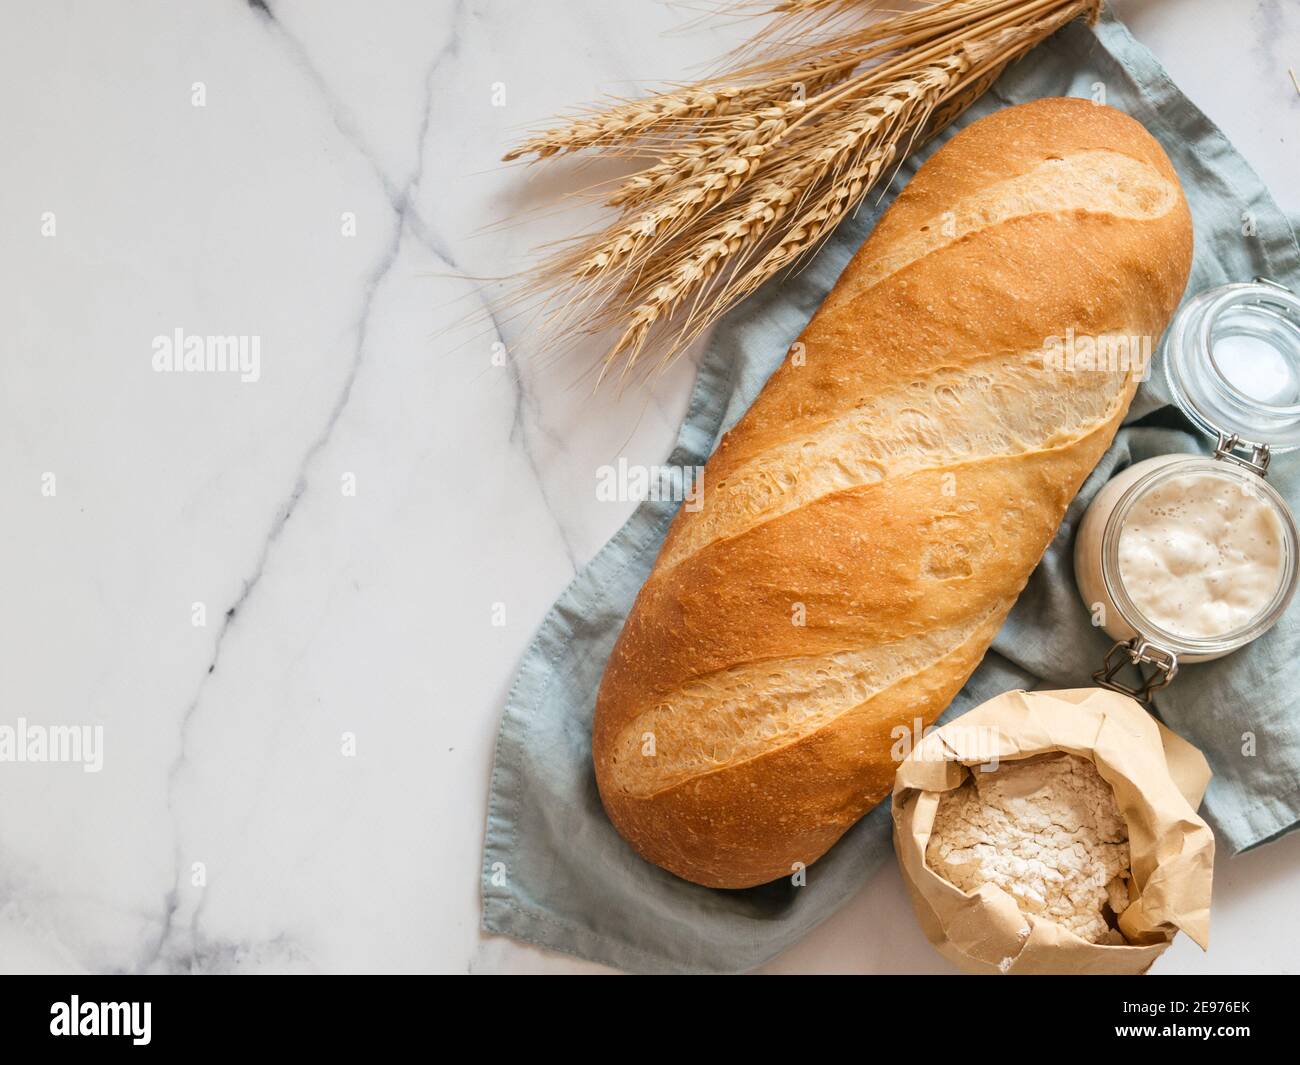 Britisches Weißblüher oder europäischer Sauerteig Baton-Brot auf weißem Marmorgrund. Frisches Brot und Glas mit Sauerteig Starter, Mehl in Papiertüte und Ohren. Draufsicht. Kopierbereich Stockfoto